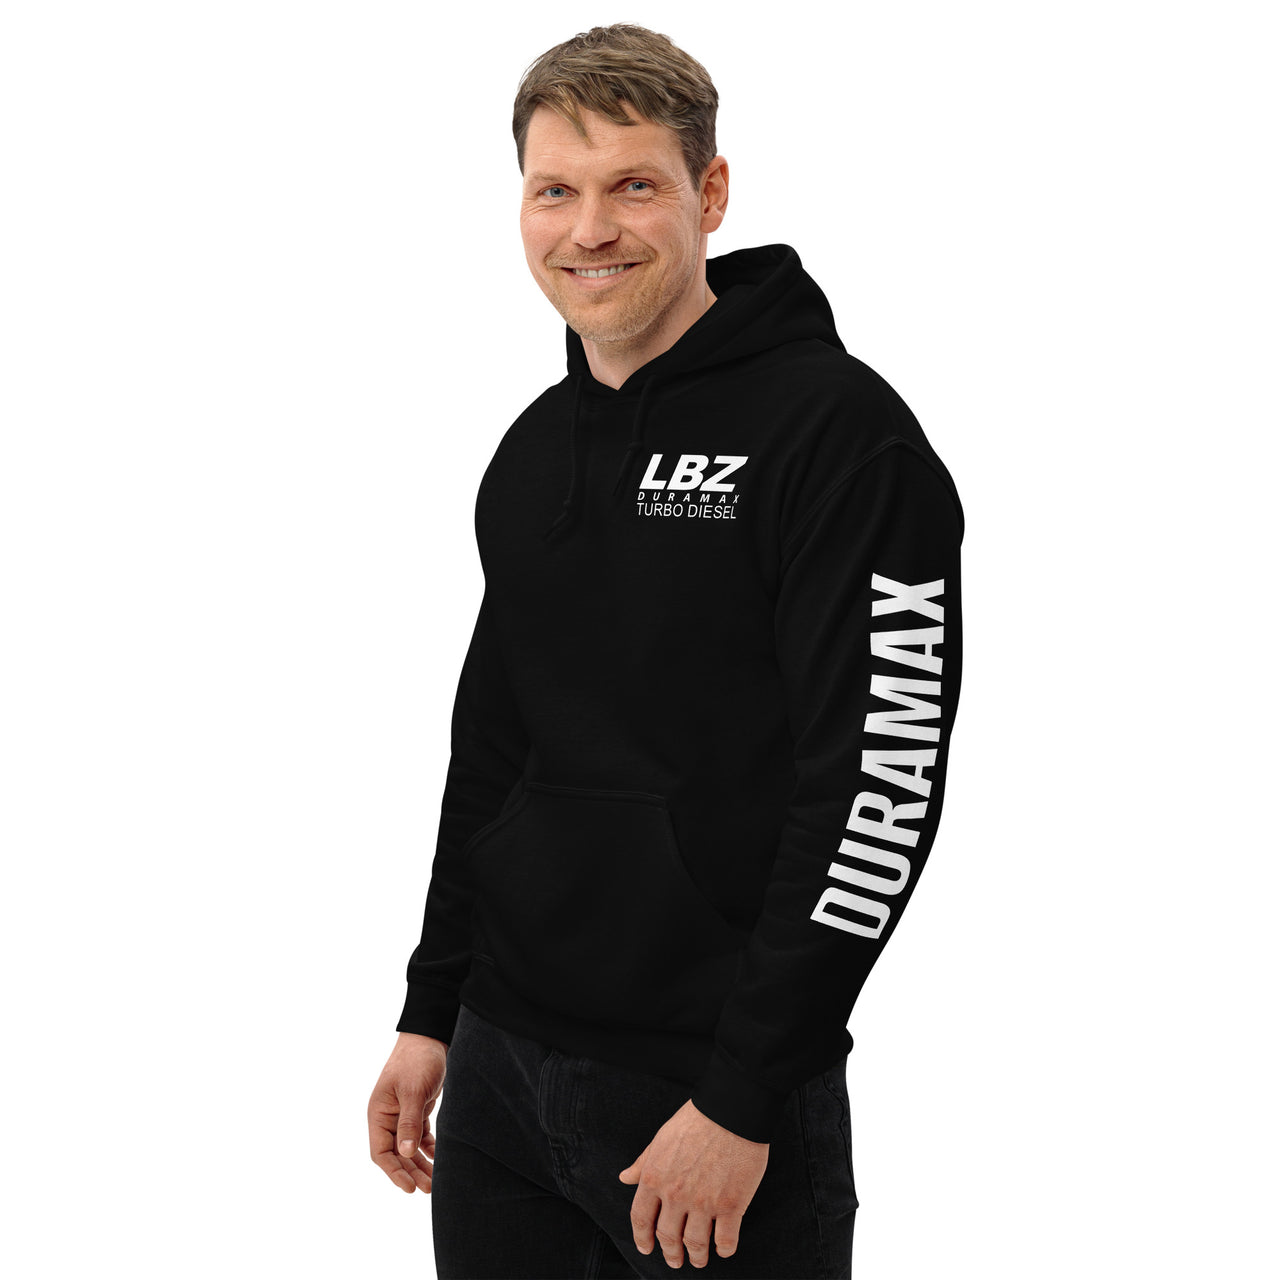 LBZ Duramax Hoodie Pullover Sweatshirt With Sleeve Print modeled in black